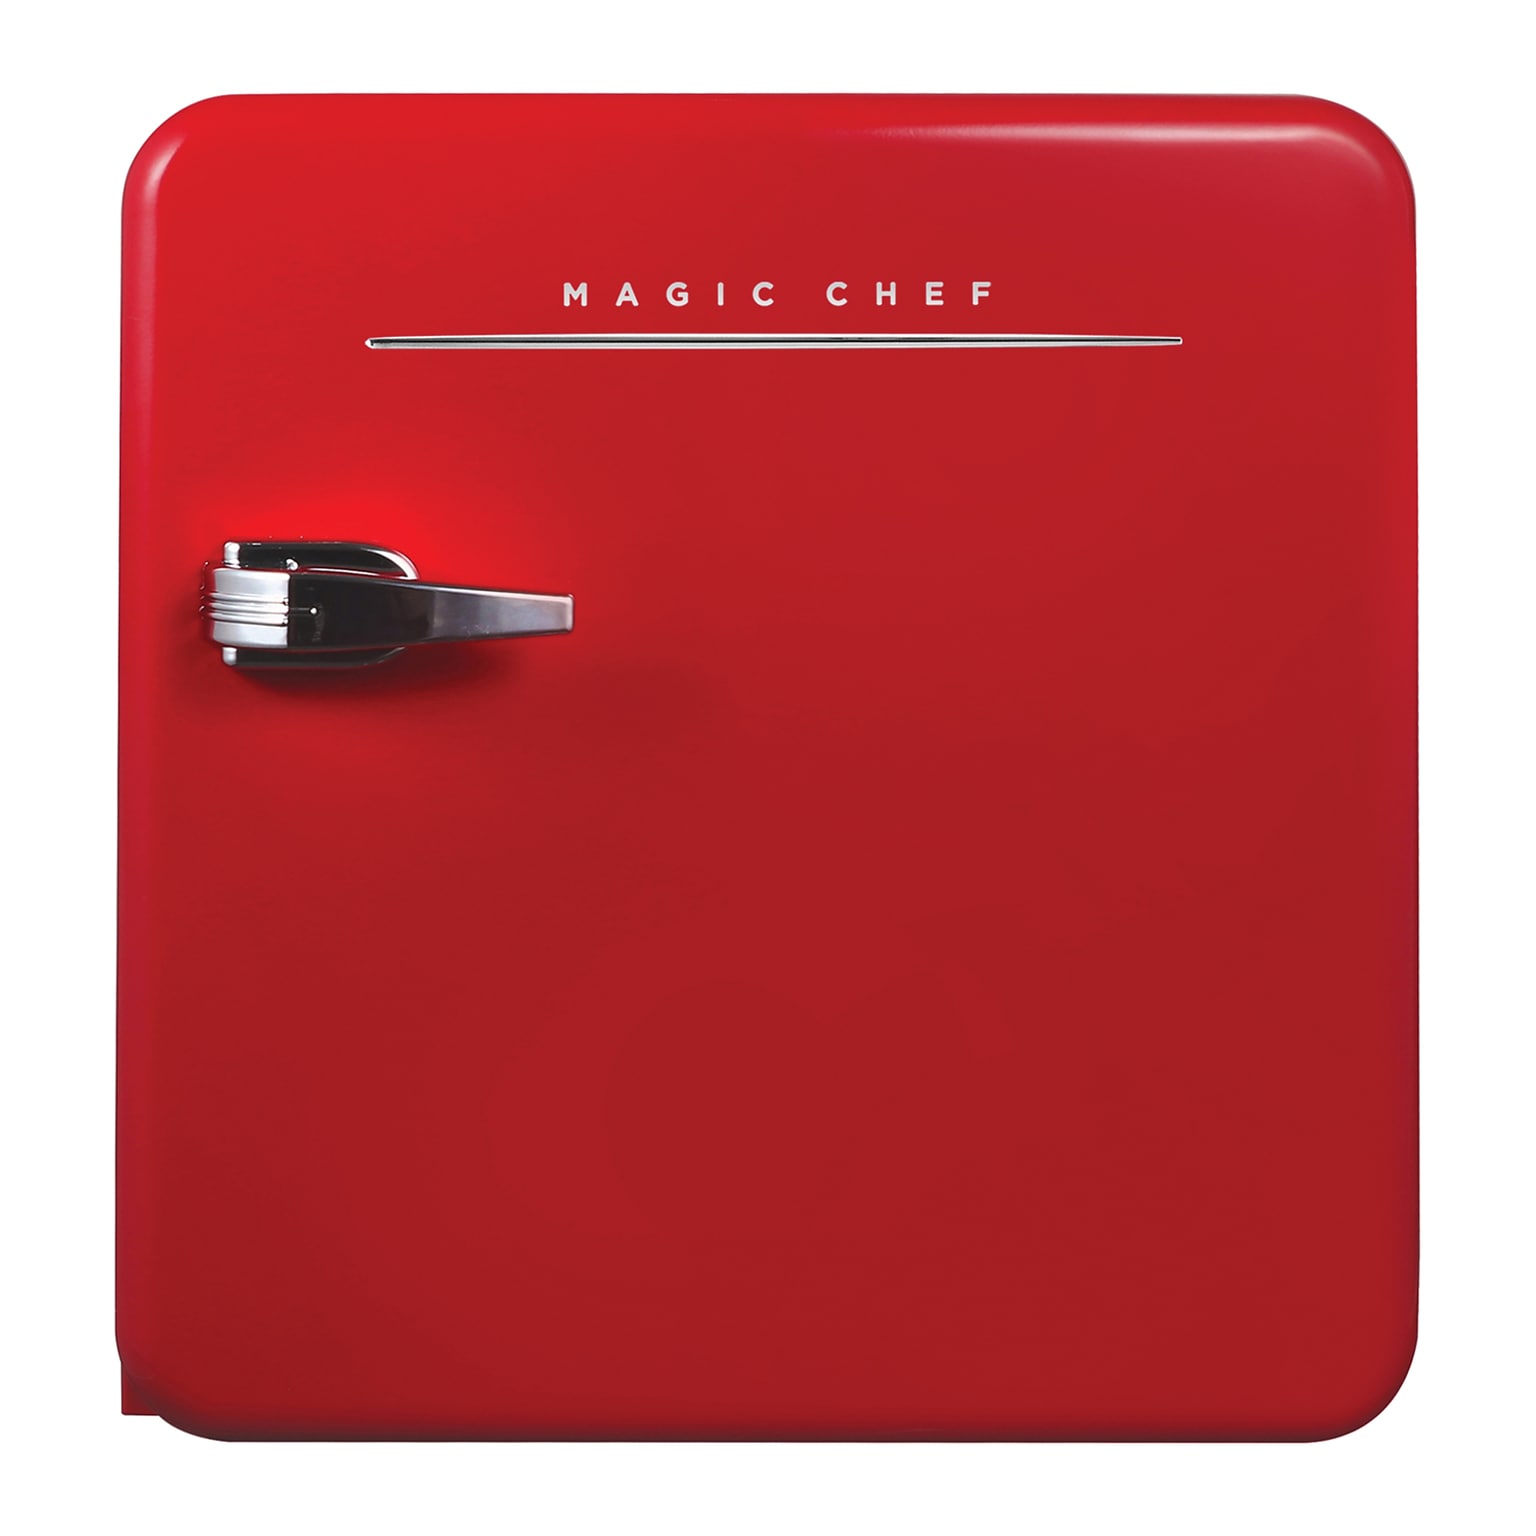 Magic Chef MCR16CHR 1.6-Cu. Ft. Retro Mini Fridge with Manual Defrost, Red